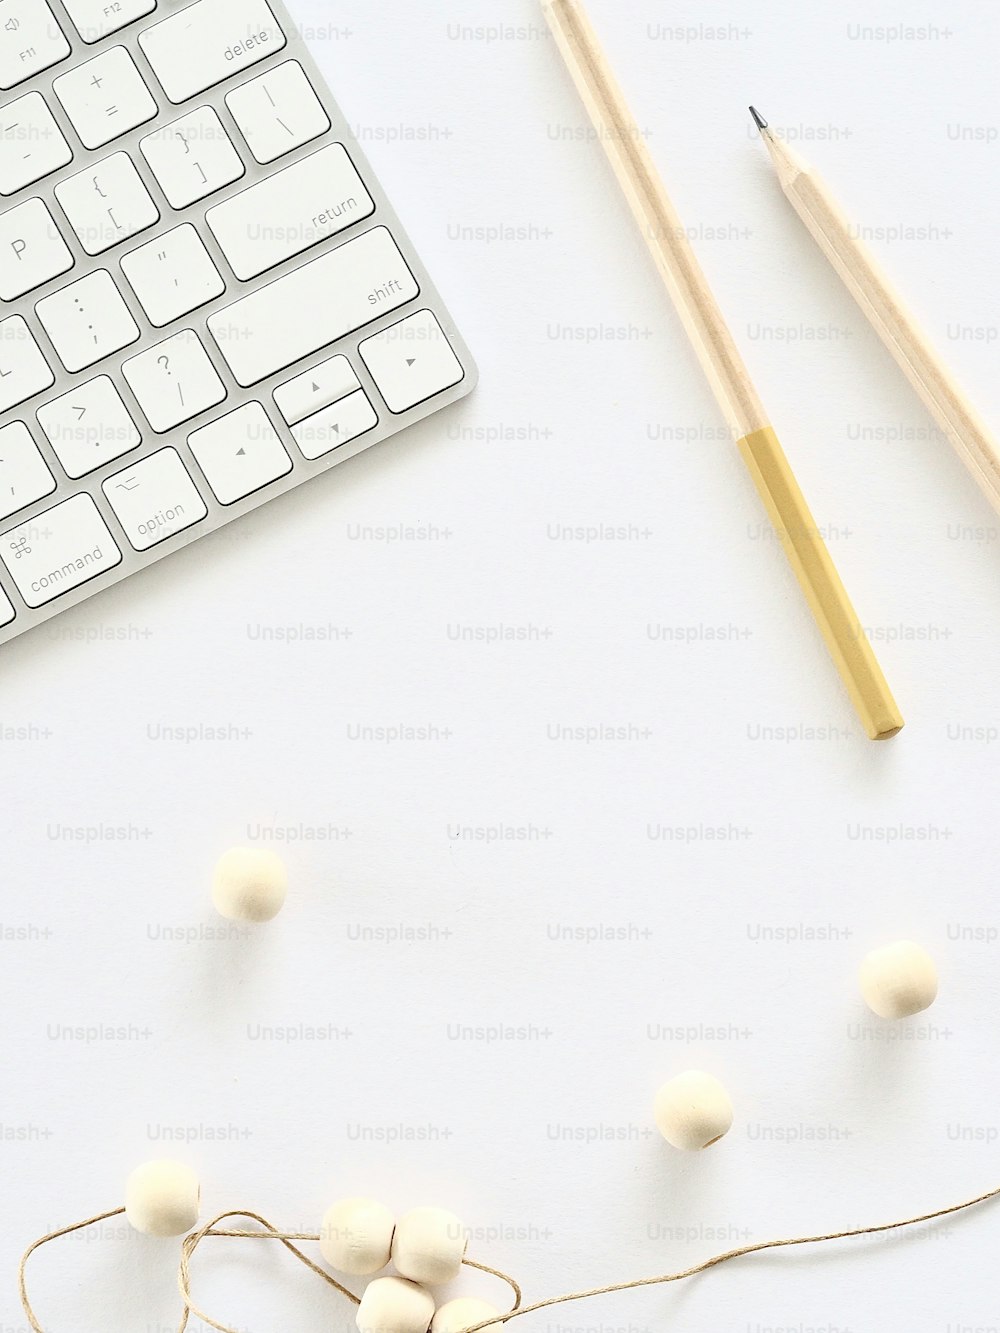 un clavier, des crayons et des pelotes de fil sur une surface blanche